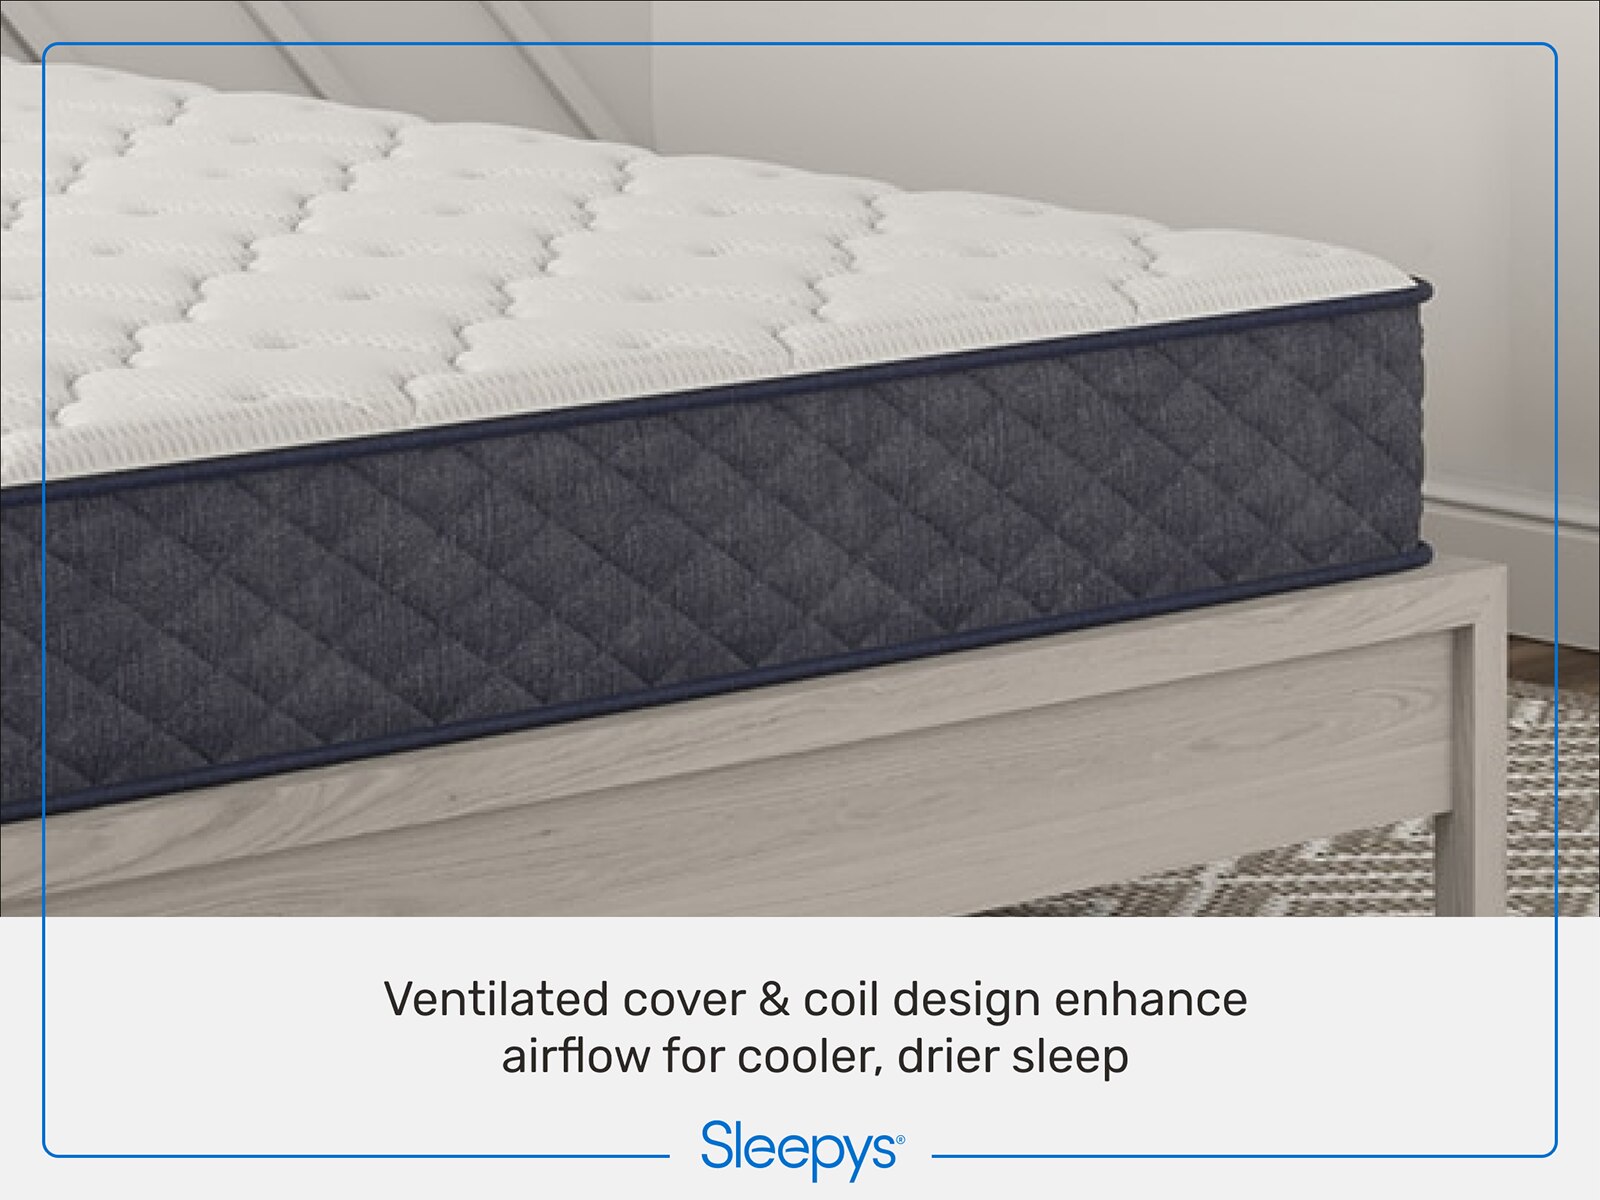 reviews of rest 9.5 firm innerspring mattress